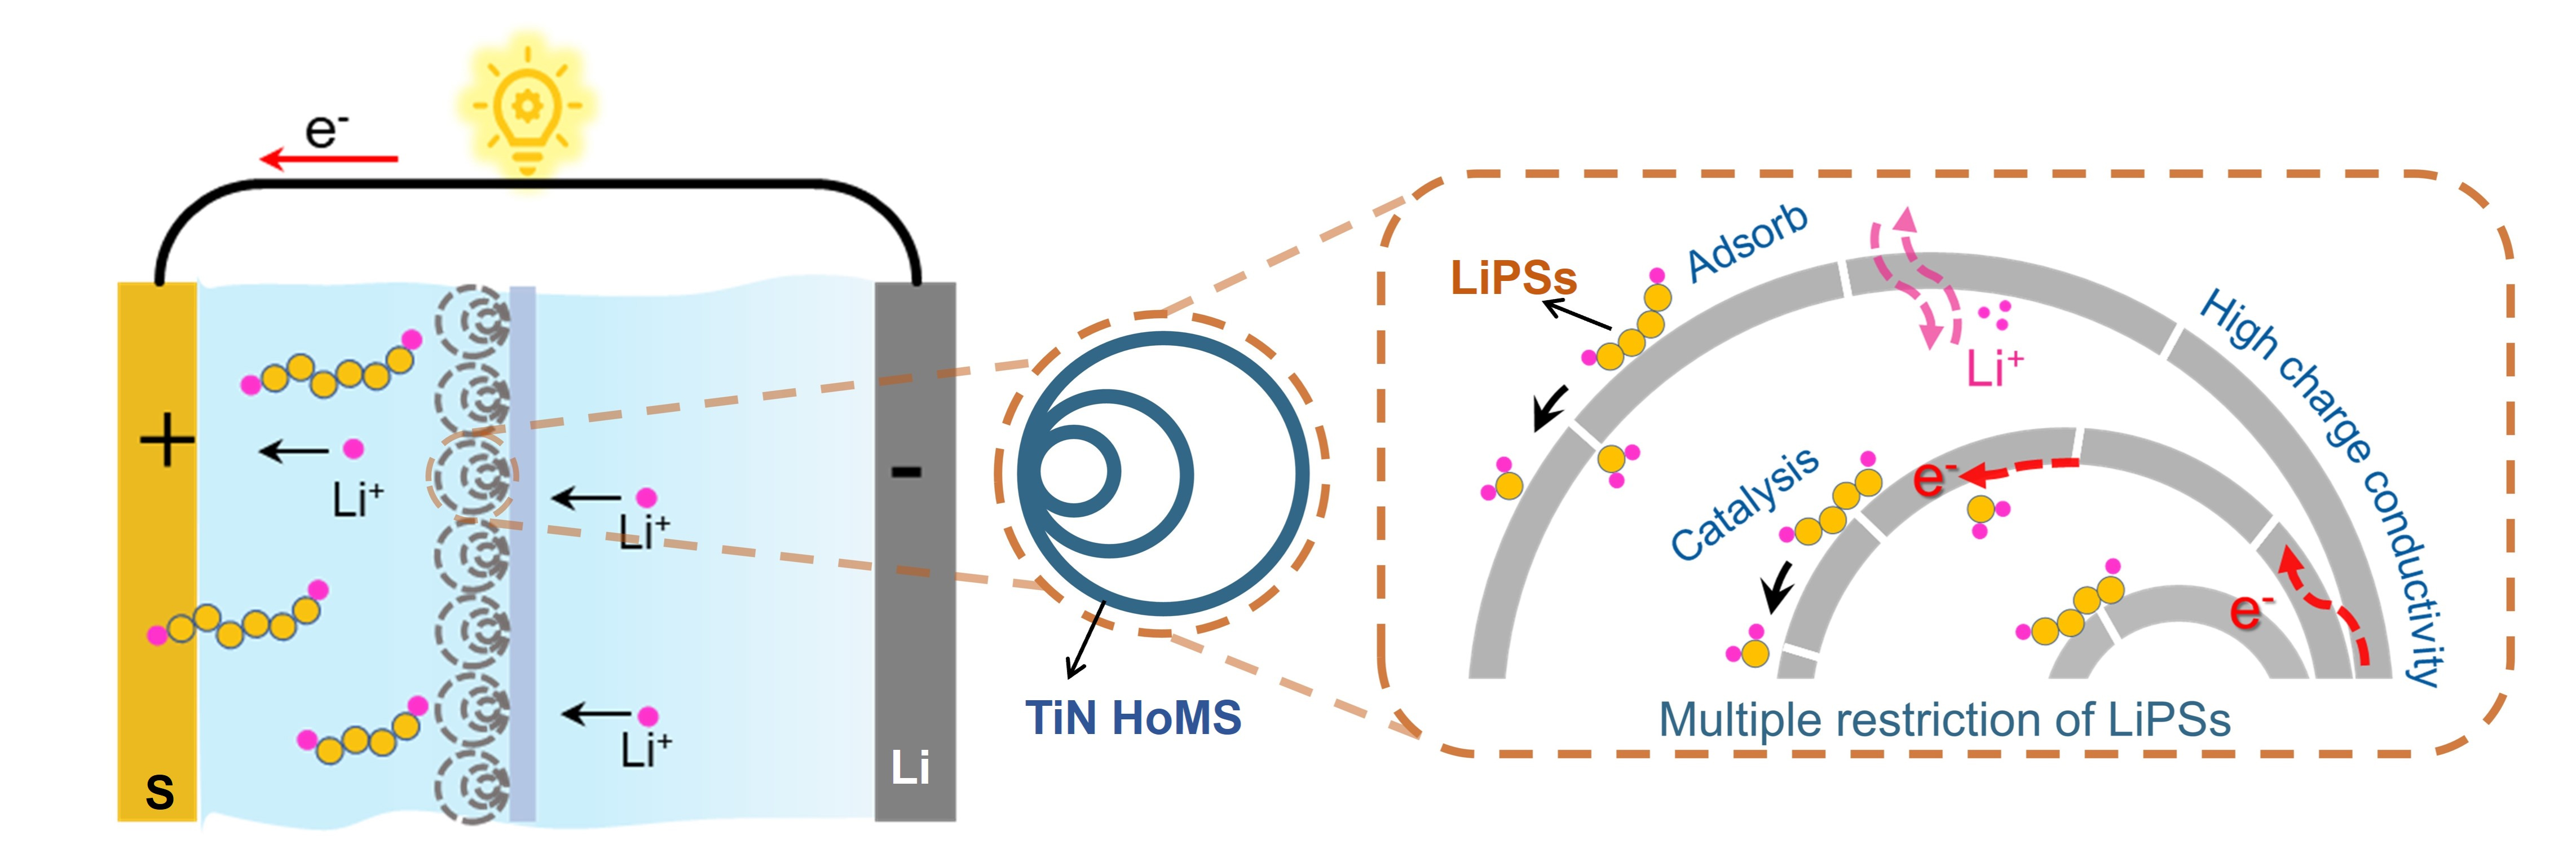 225. 中空多壳层结构TiN修饰隔膜对锂硫电池性能增强研究